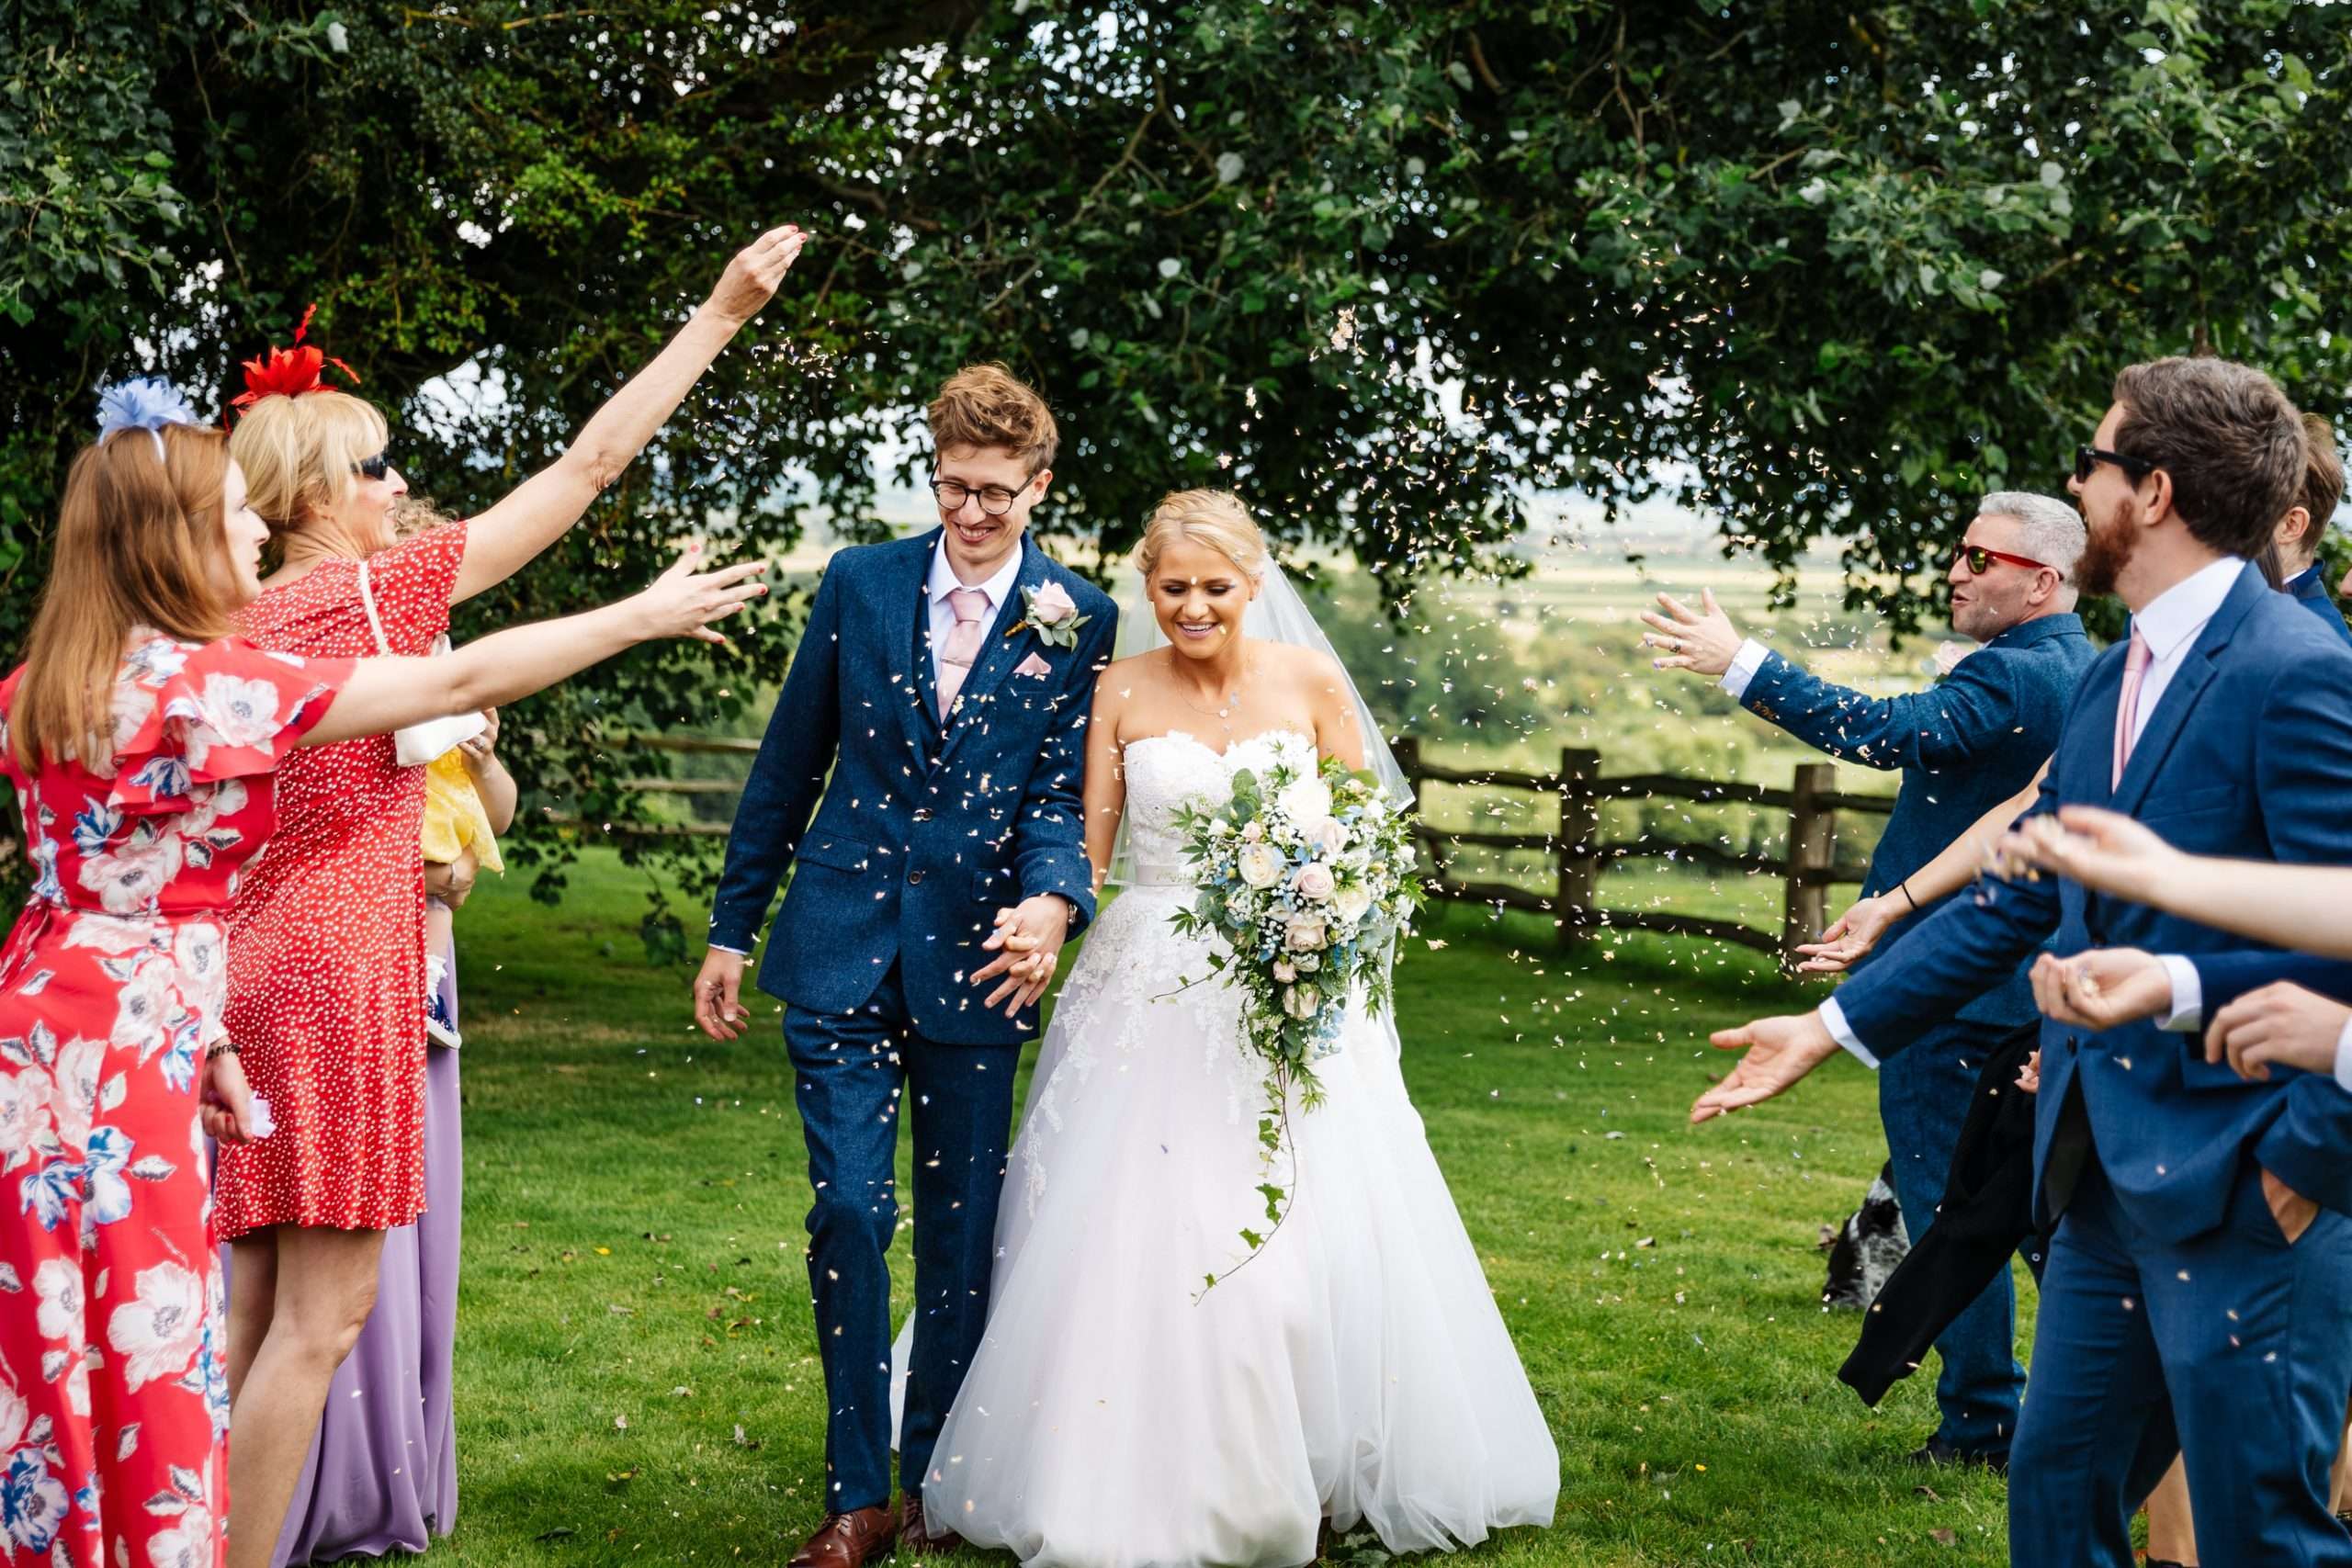 Montague Farm wedding, Sussex - Zoe & Peter